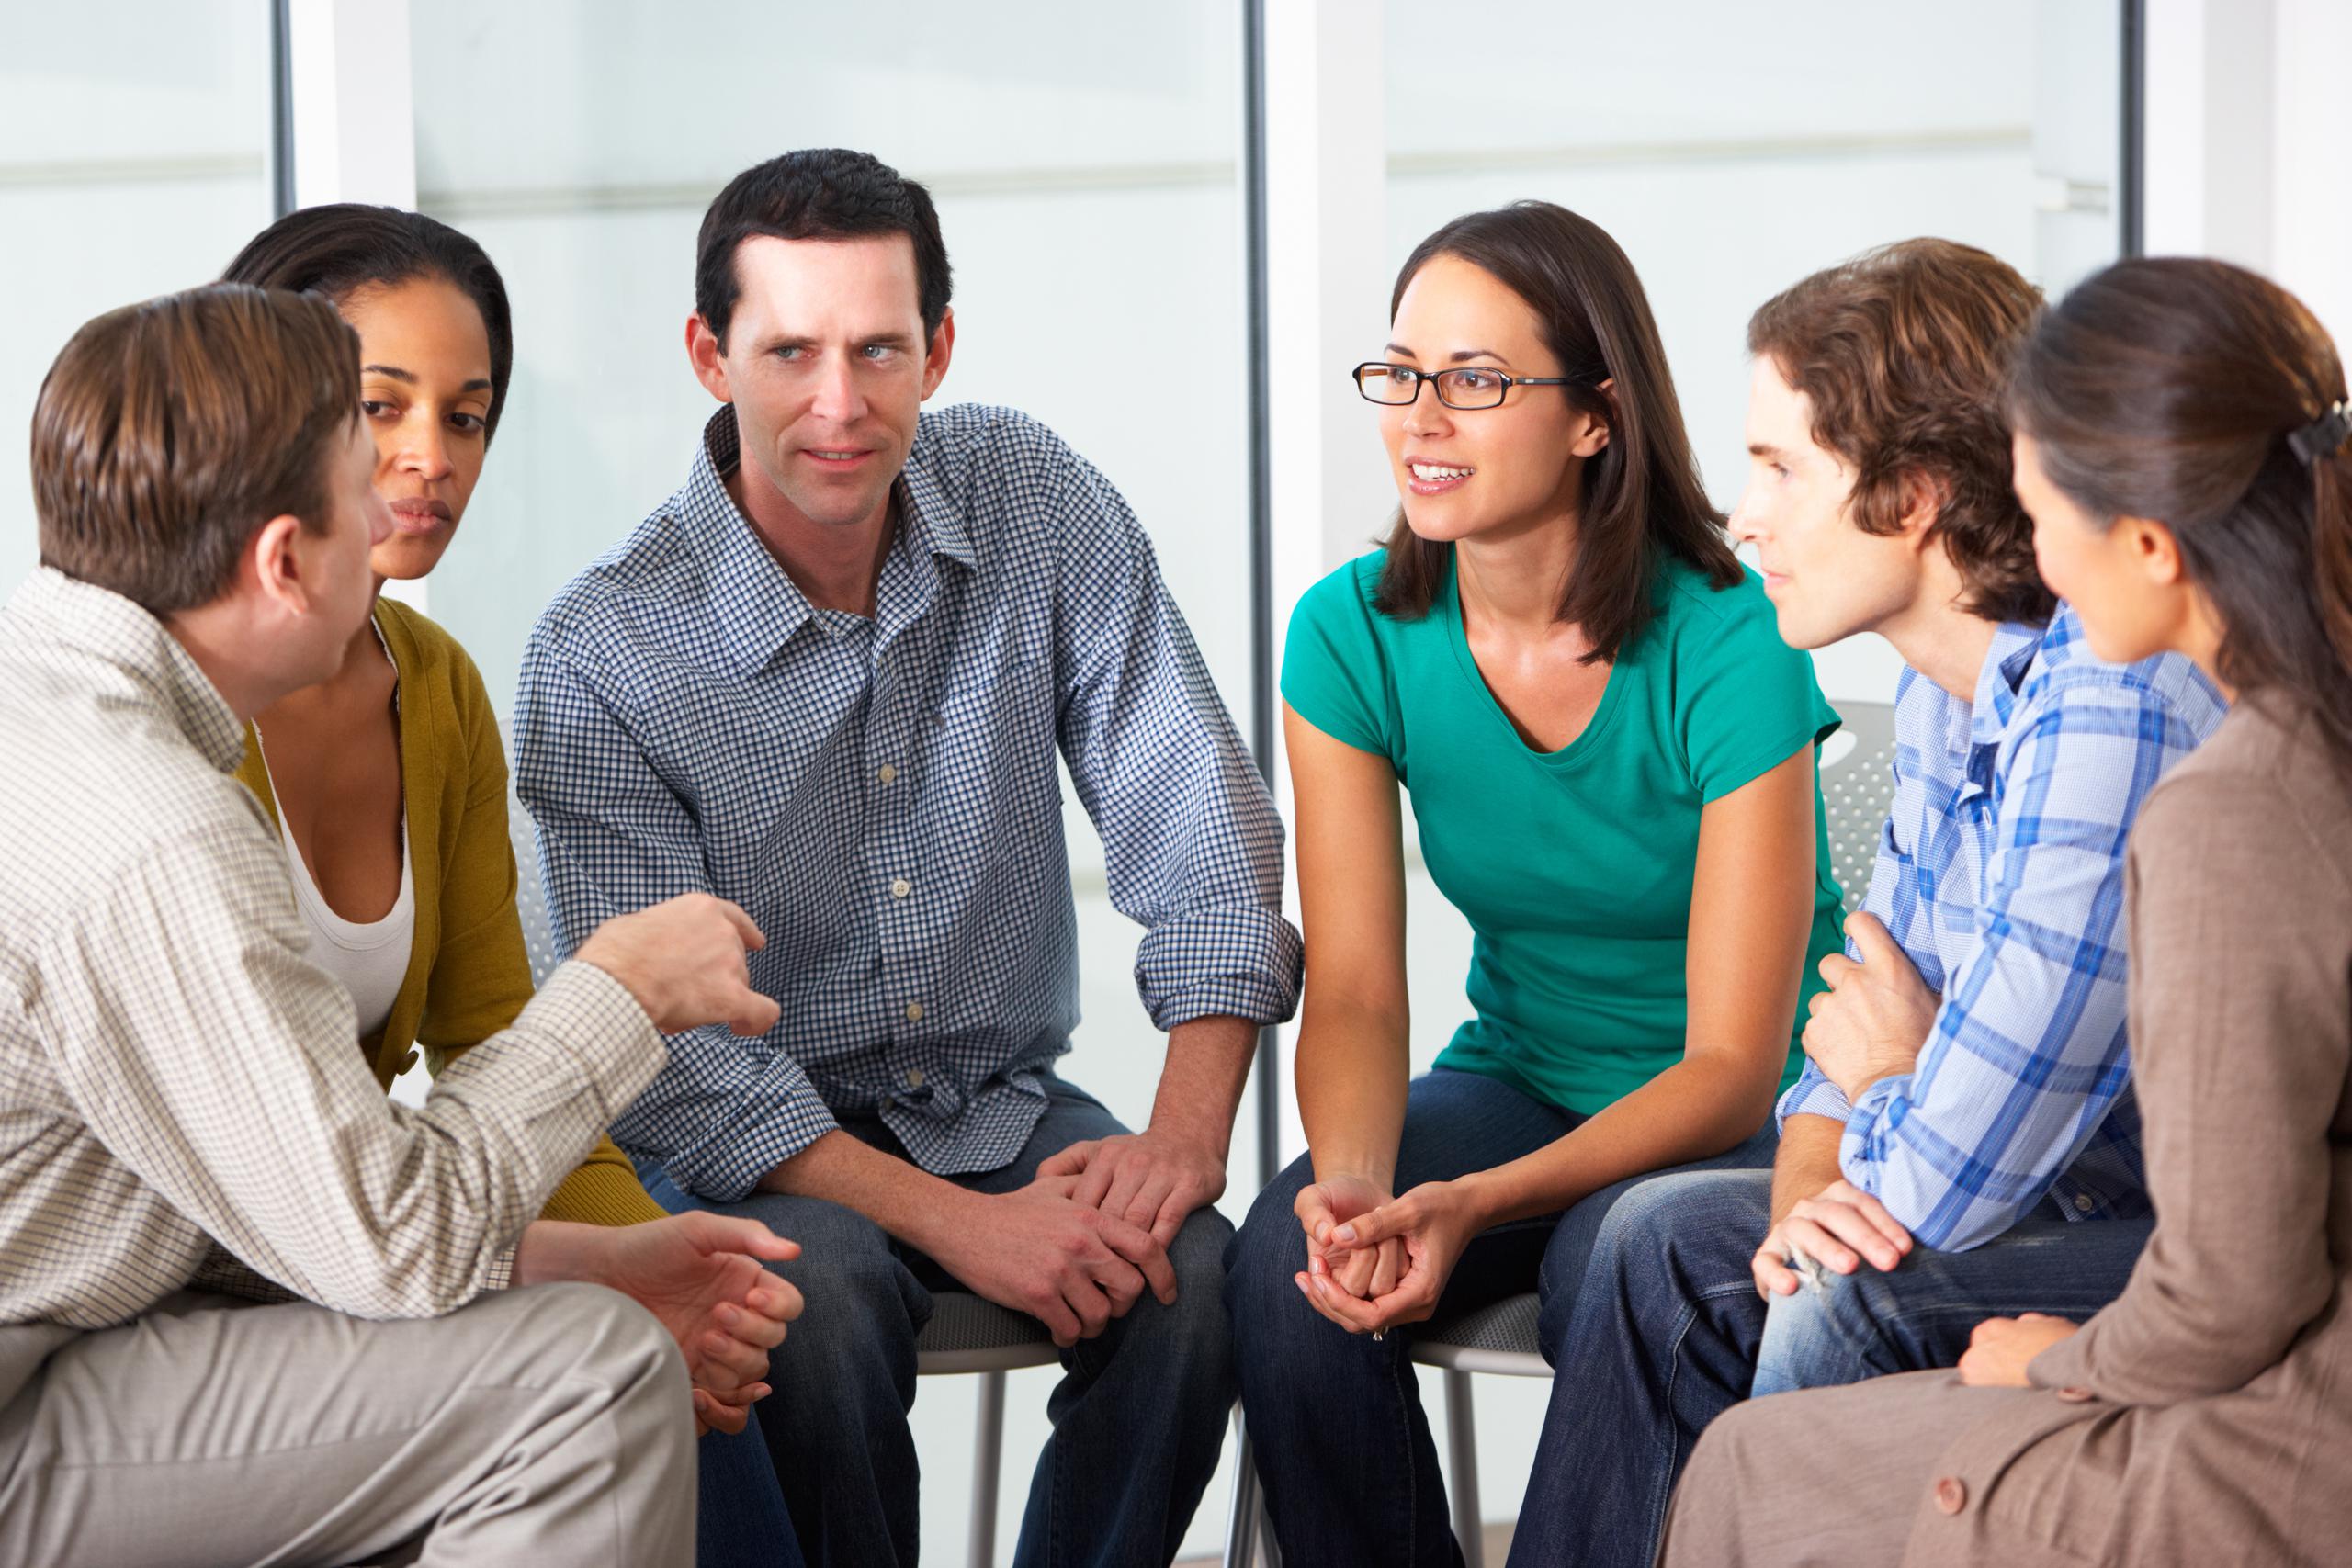 Identifica grupos de apoyos, amistades o familiares que sean empáticos a la hora de conversar sobre la salud mental.